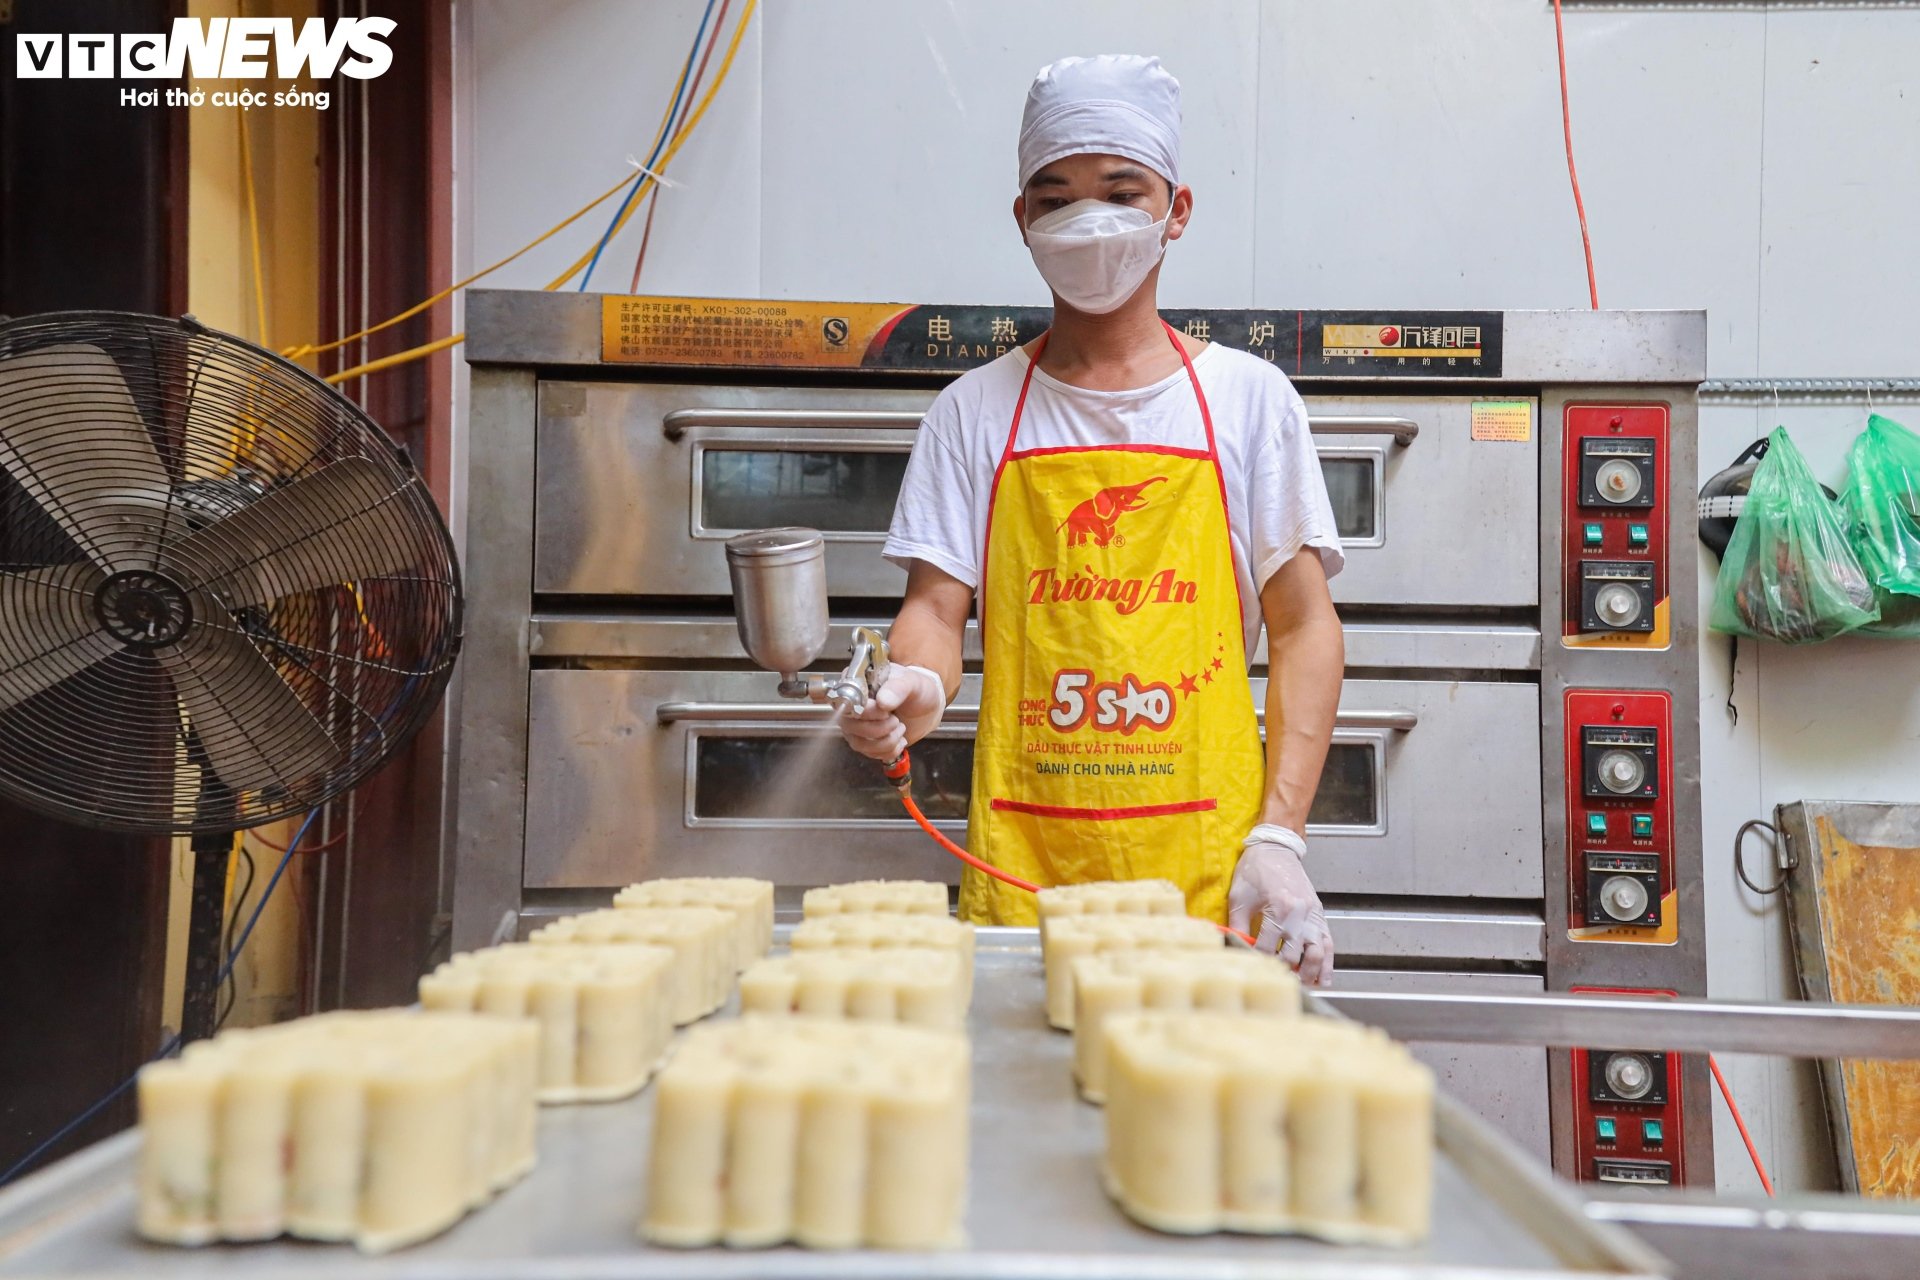 Cảnh sản xuất bánh Trung thu siêu hút khách ở làng nghề nổi tiếng Hà Nội - Ảnh 13.